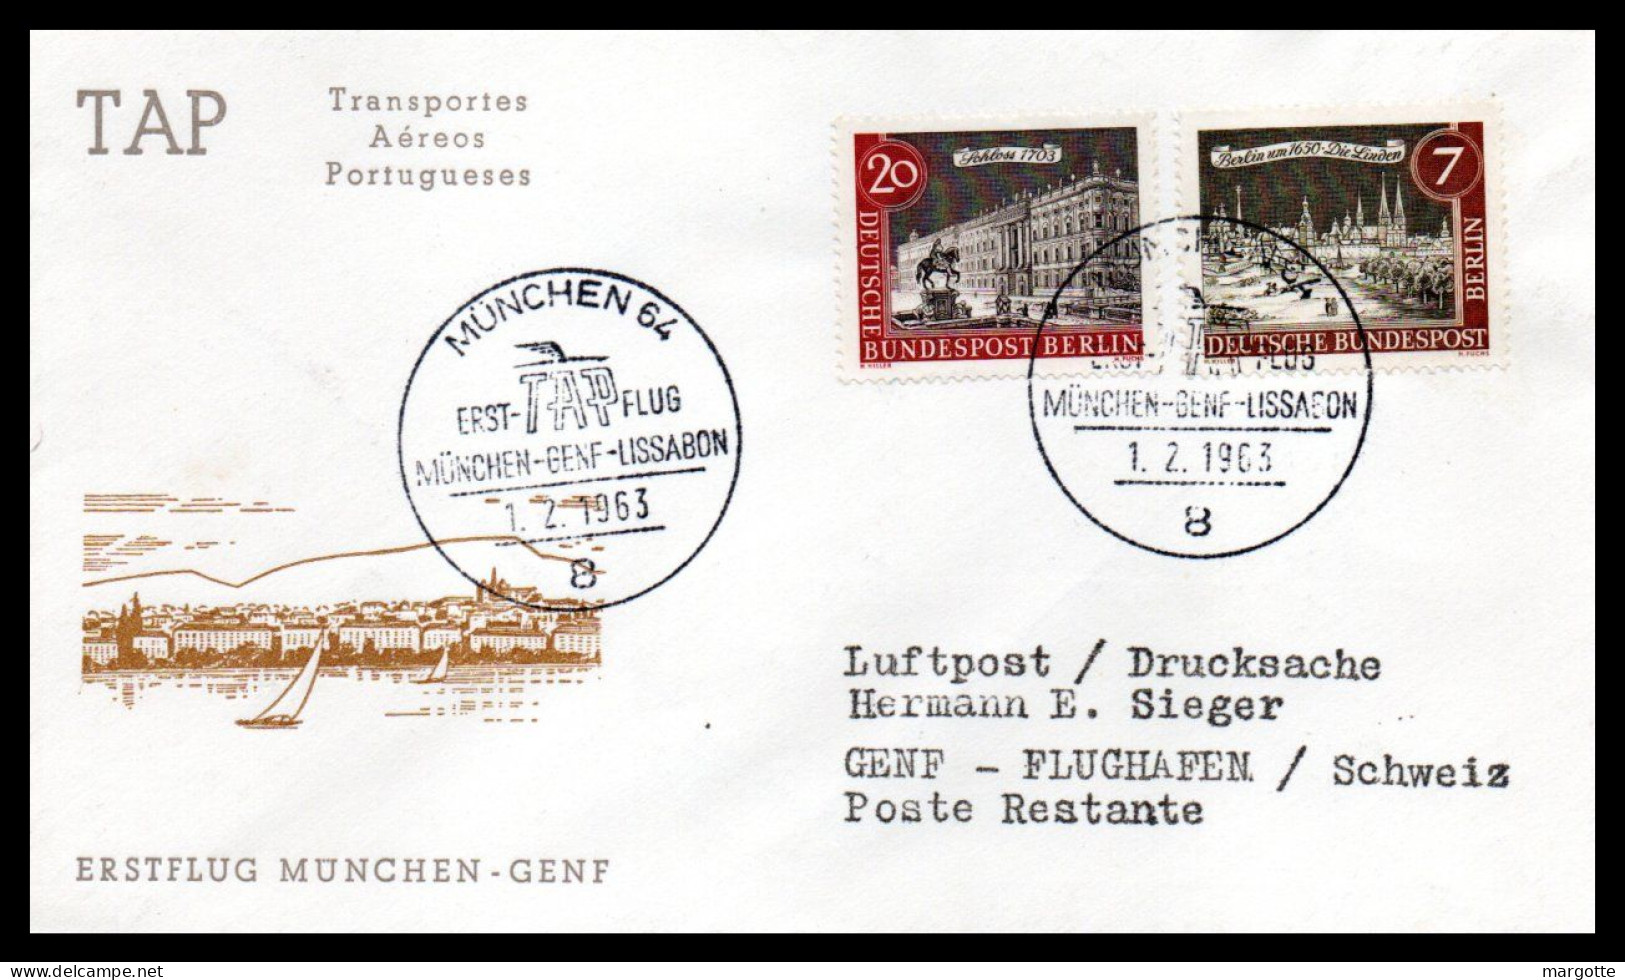 FFC TAP  Munchen-Genf-Lissabon  01/02/1963 - Premiers Vols